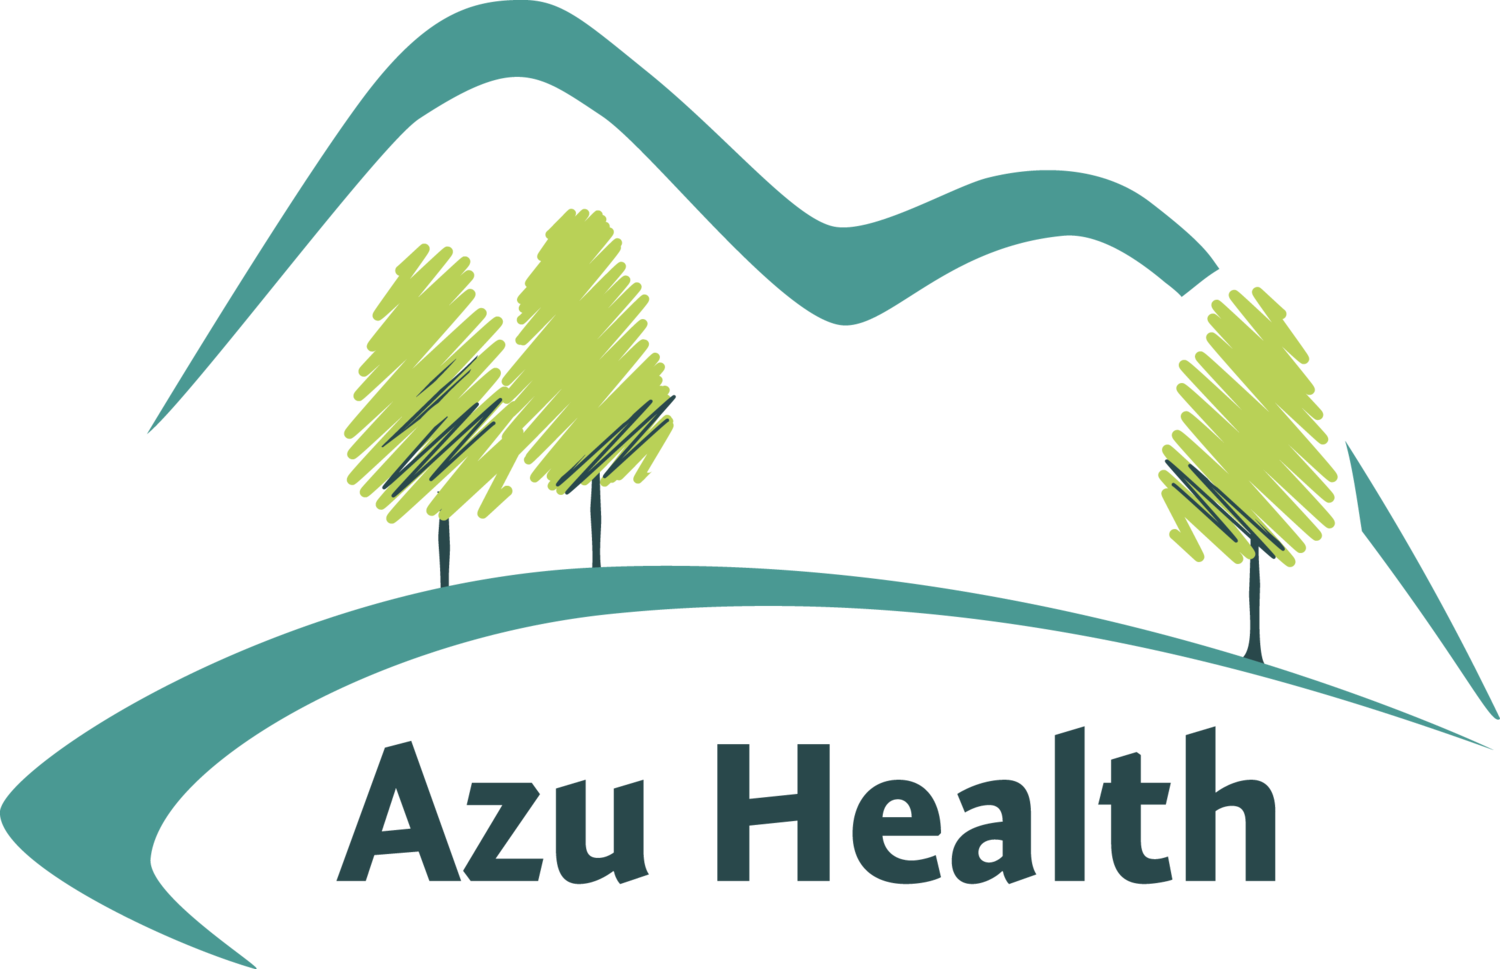 Azu Health Ltd